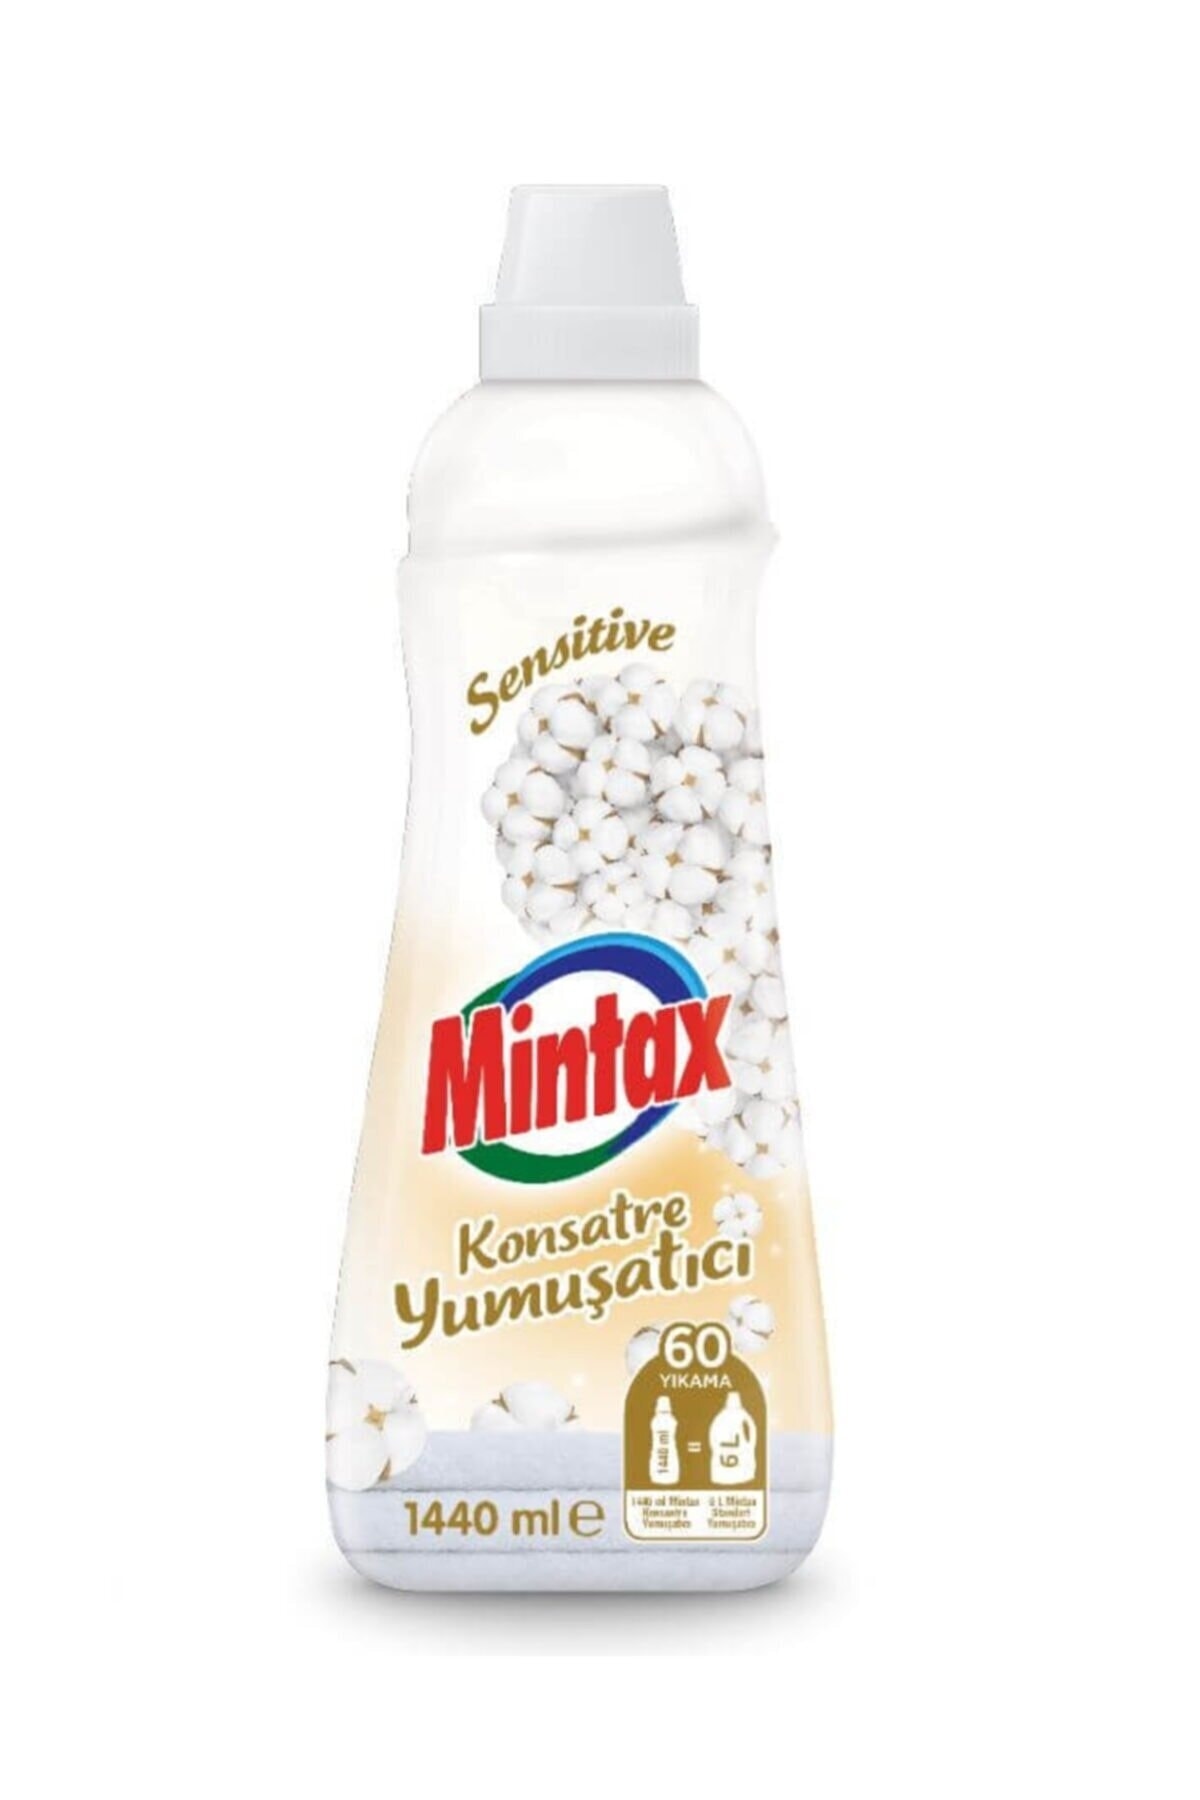 Mintax Sensitive Yumuşatıcı 1440 ml